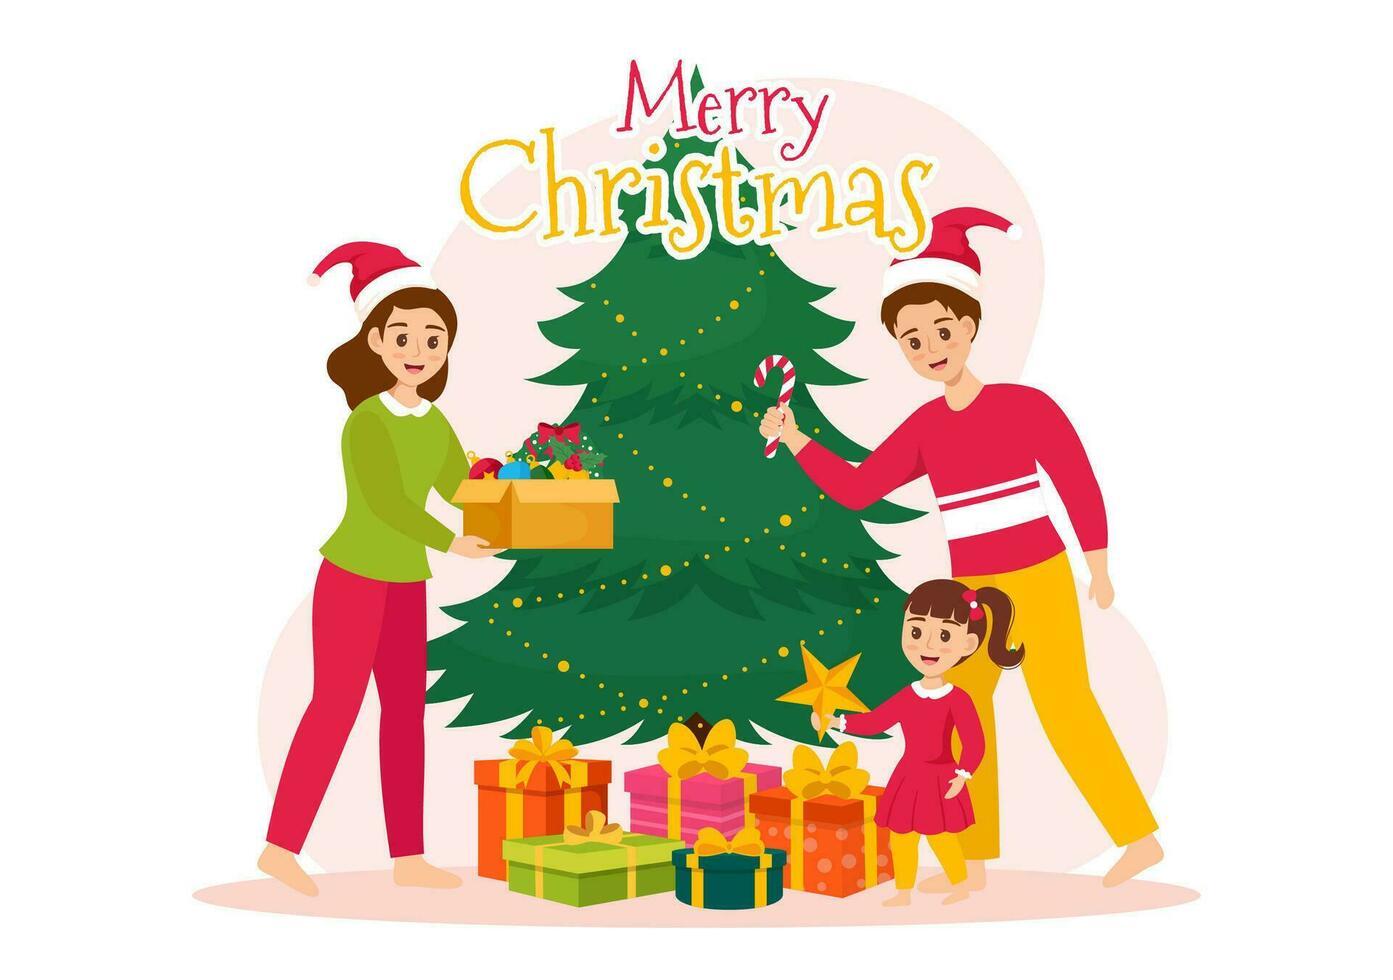 glad jul vektor illustration med santa claus, struntsak boll, gåva låda, överraskning gåvor, träd och snö bakgrund i platt tecknad serie design